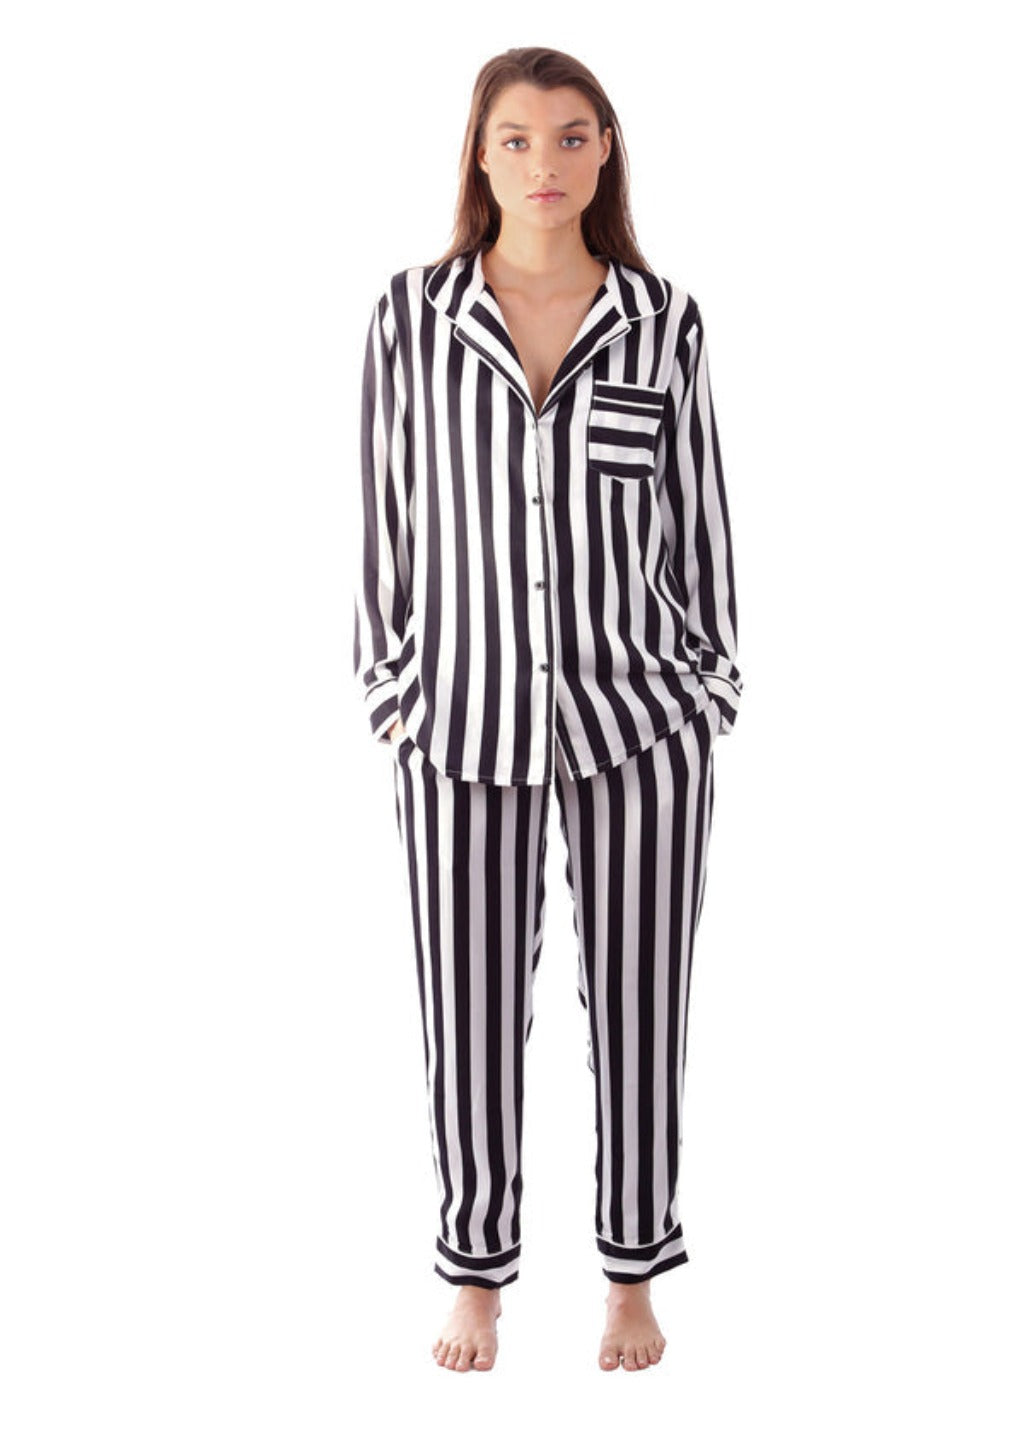 Plush Silky Striped Pajama Set XS Black